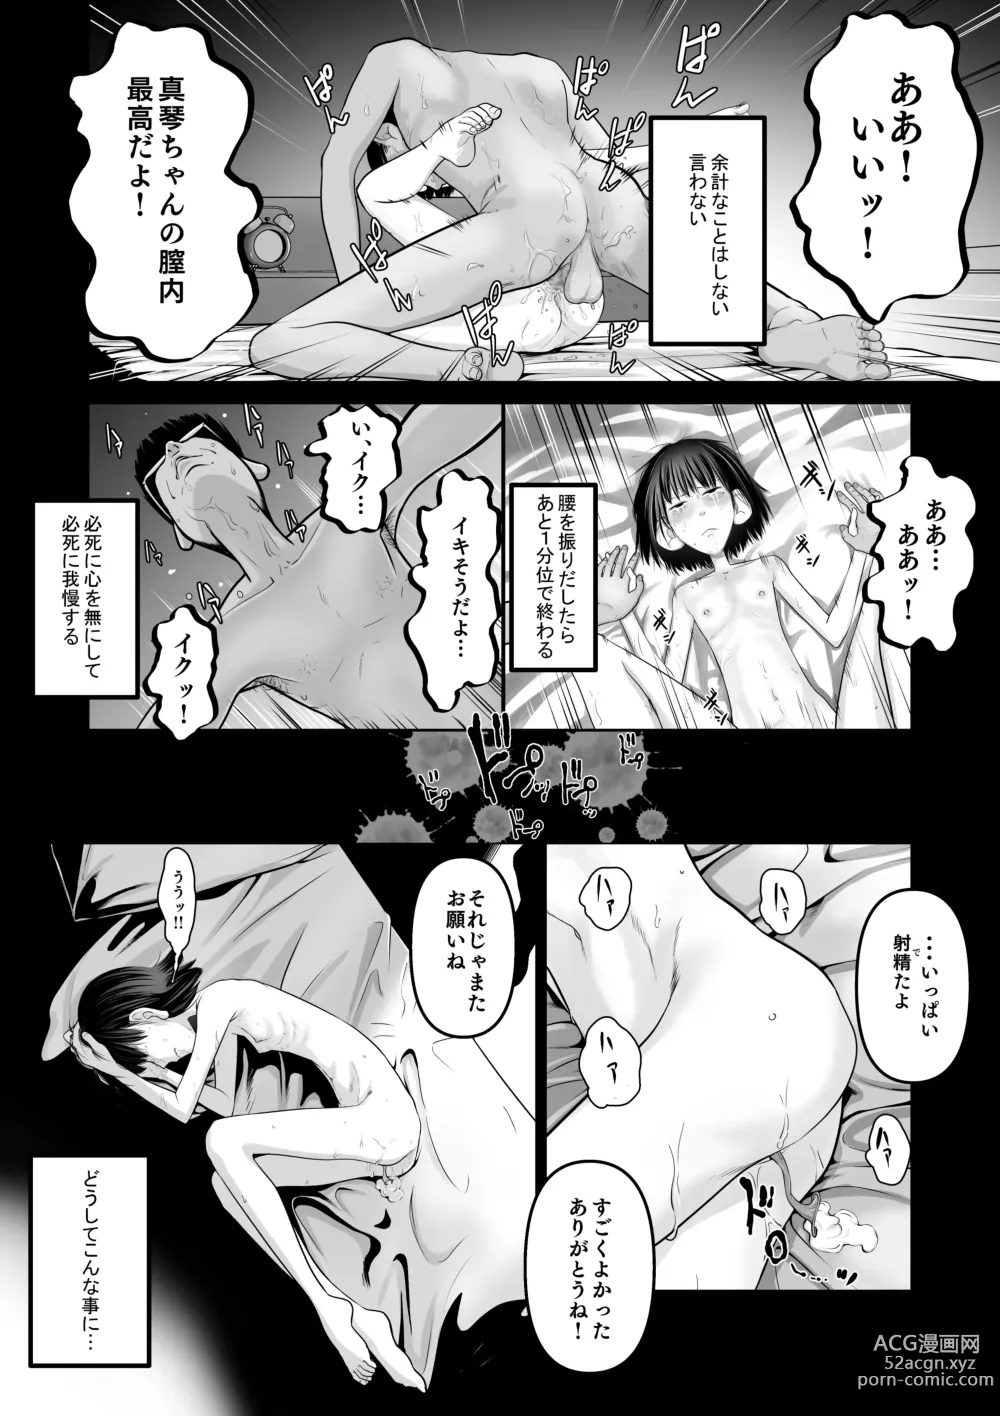 Page 3 of doujinshi Makoto-chan Himitsu no Otetsudai.